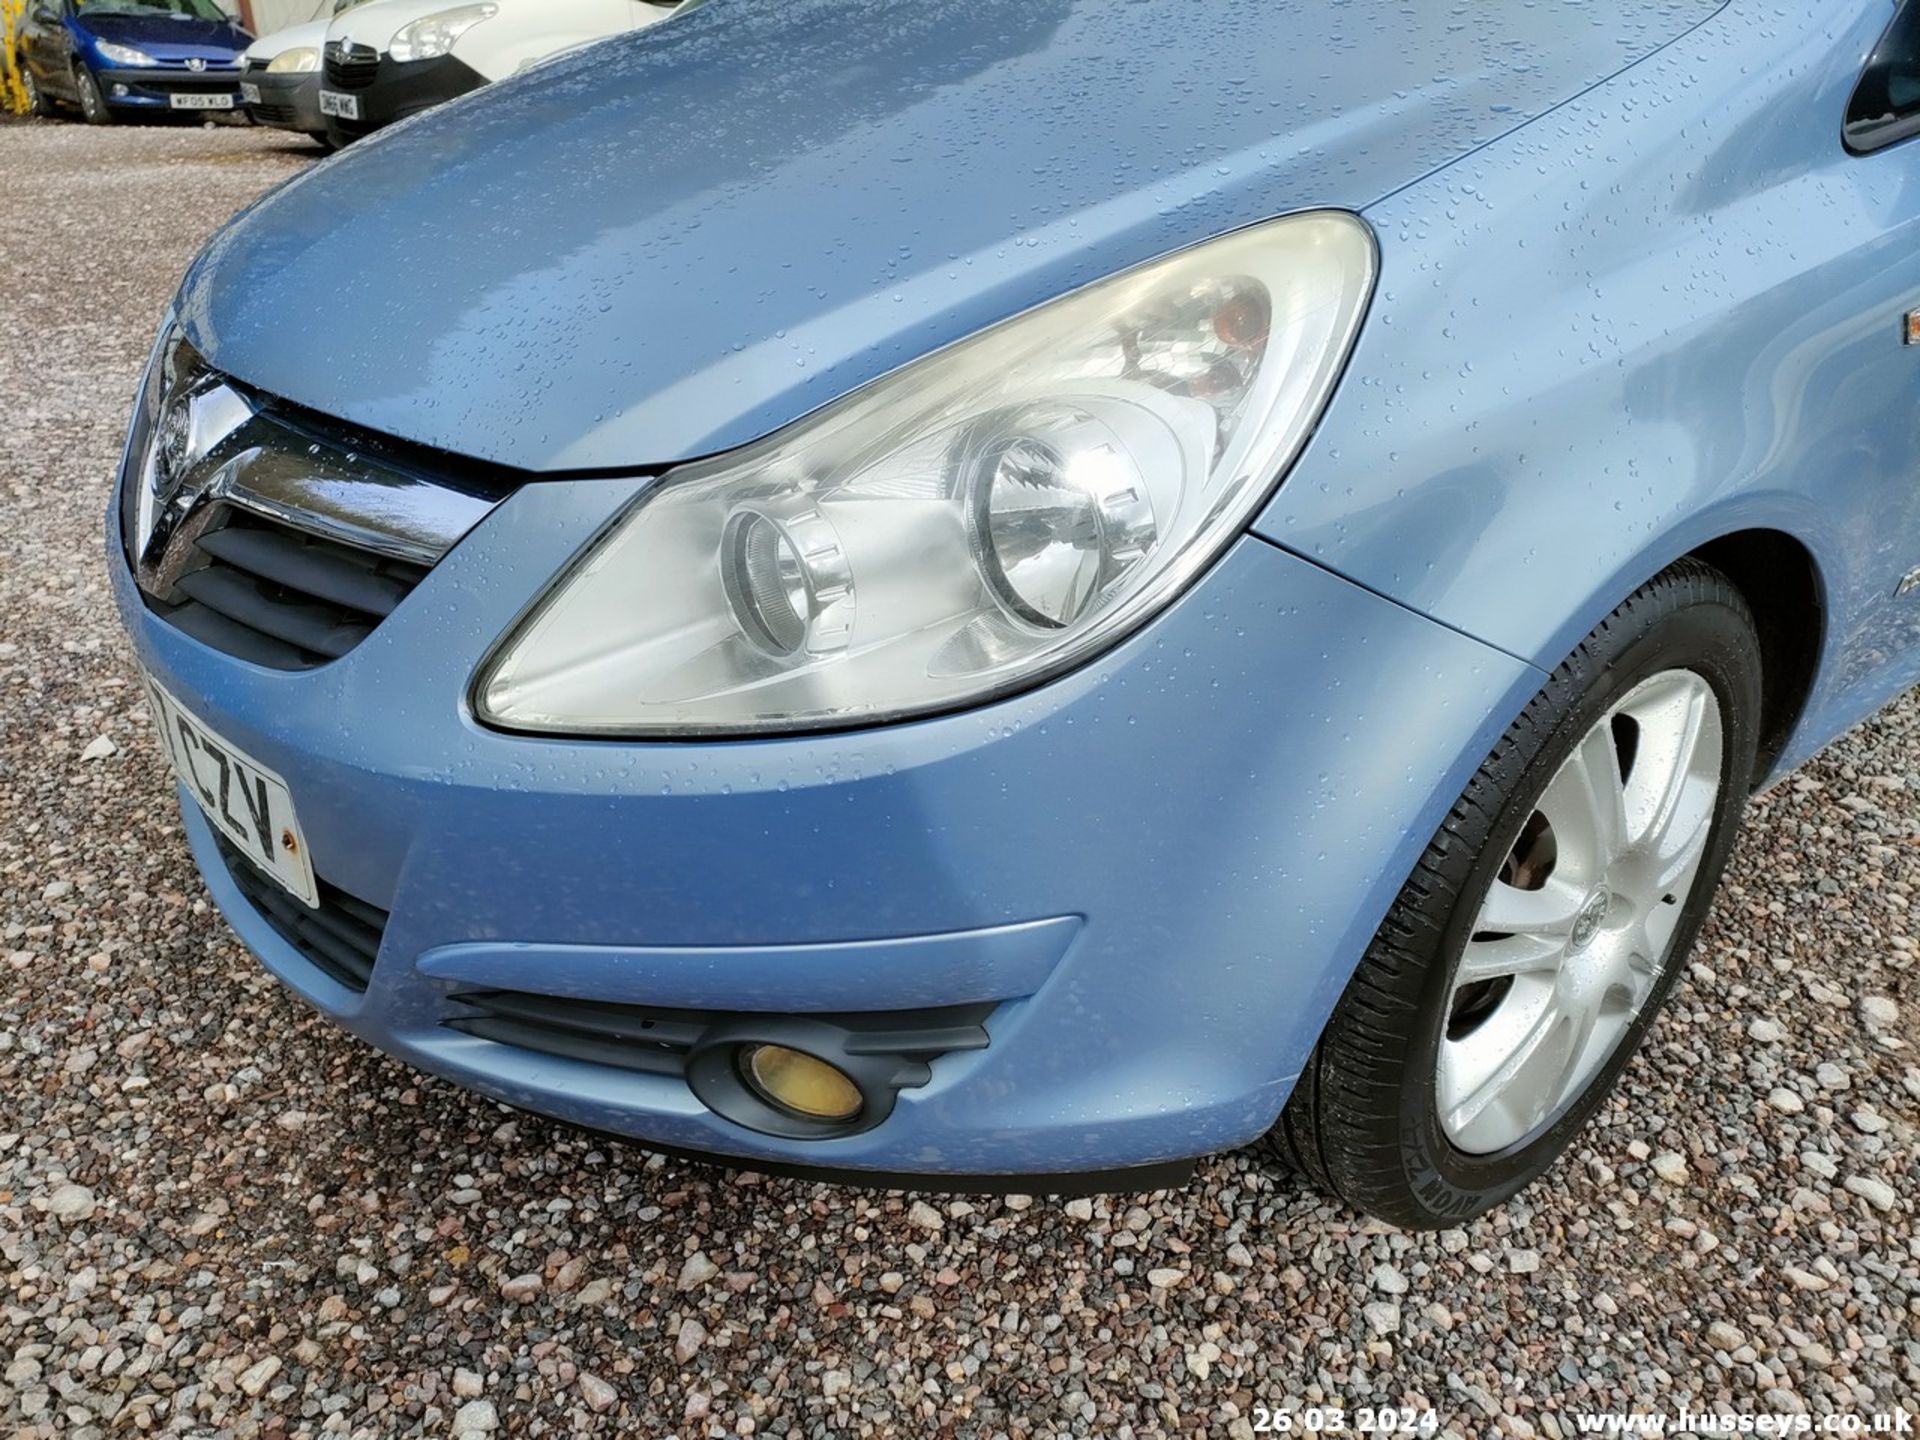 07/57 VAUXHALL CORSA DESIGN - 1364cc 5dr Hatchback (Blue, 118k) - Image 13 of 59